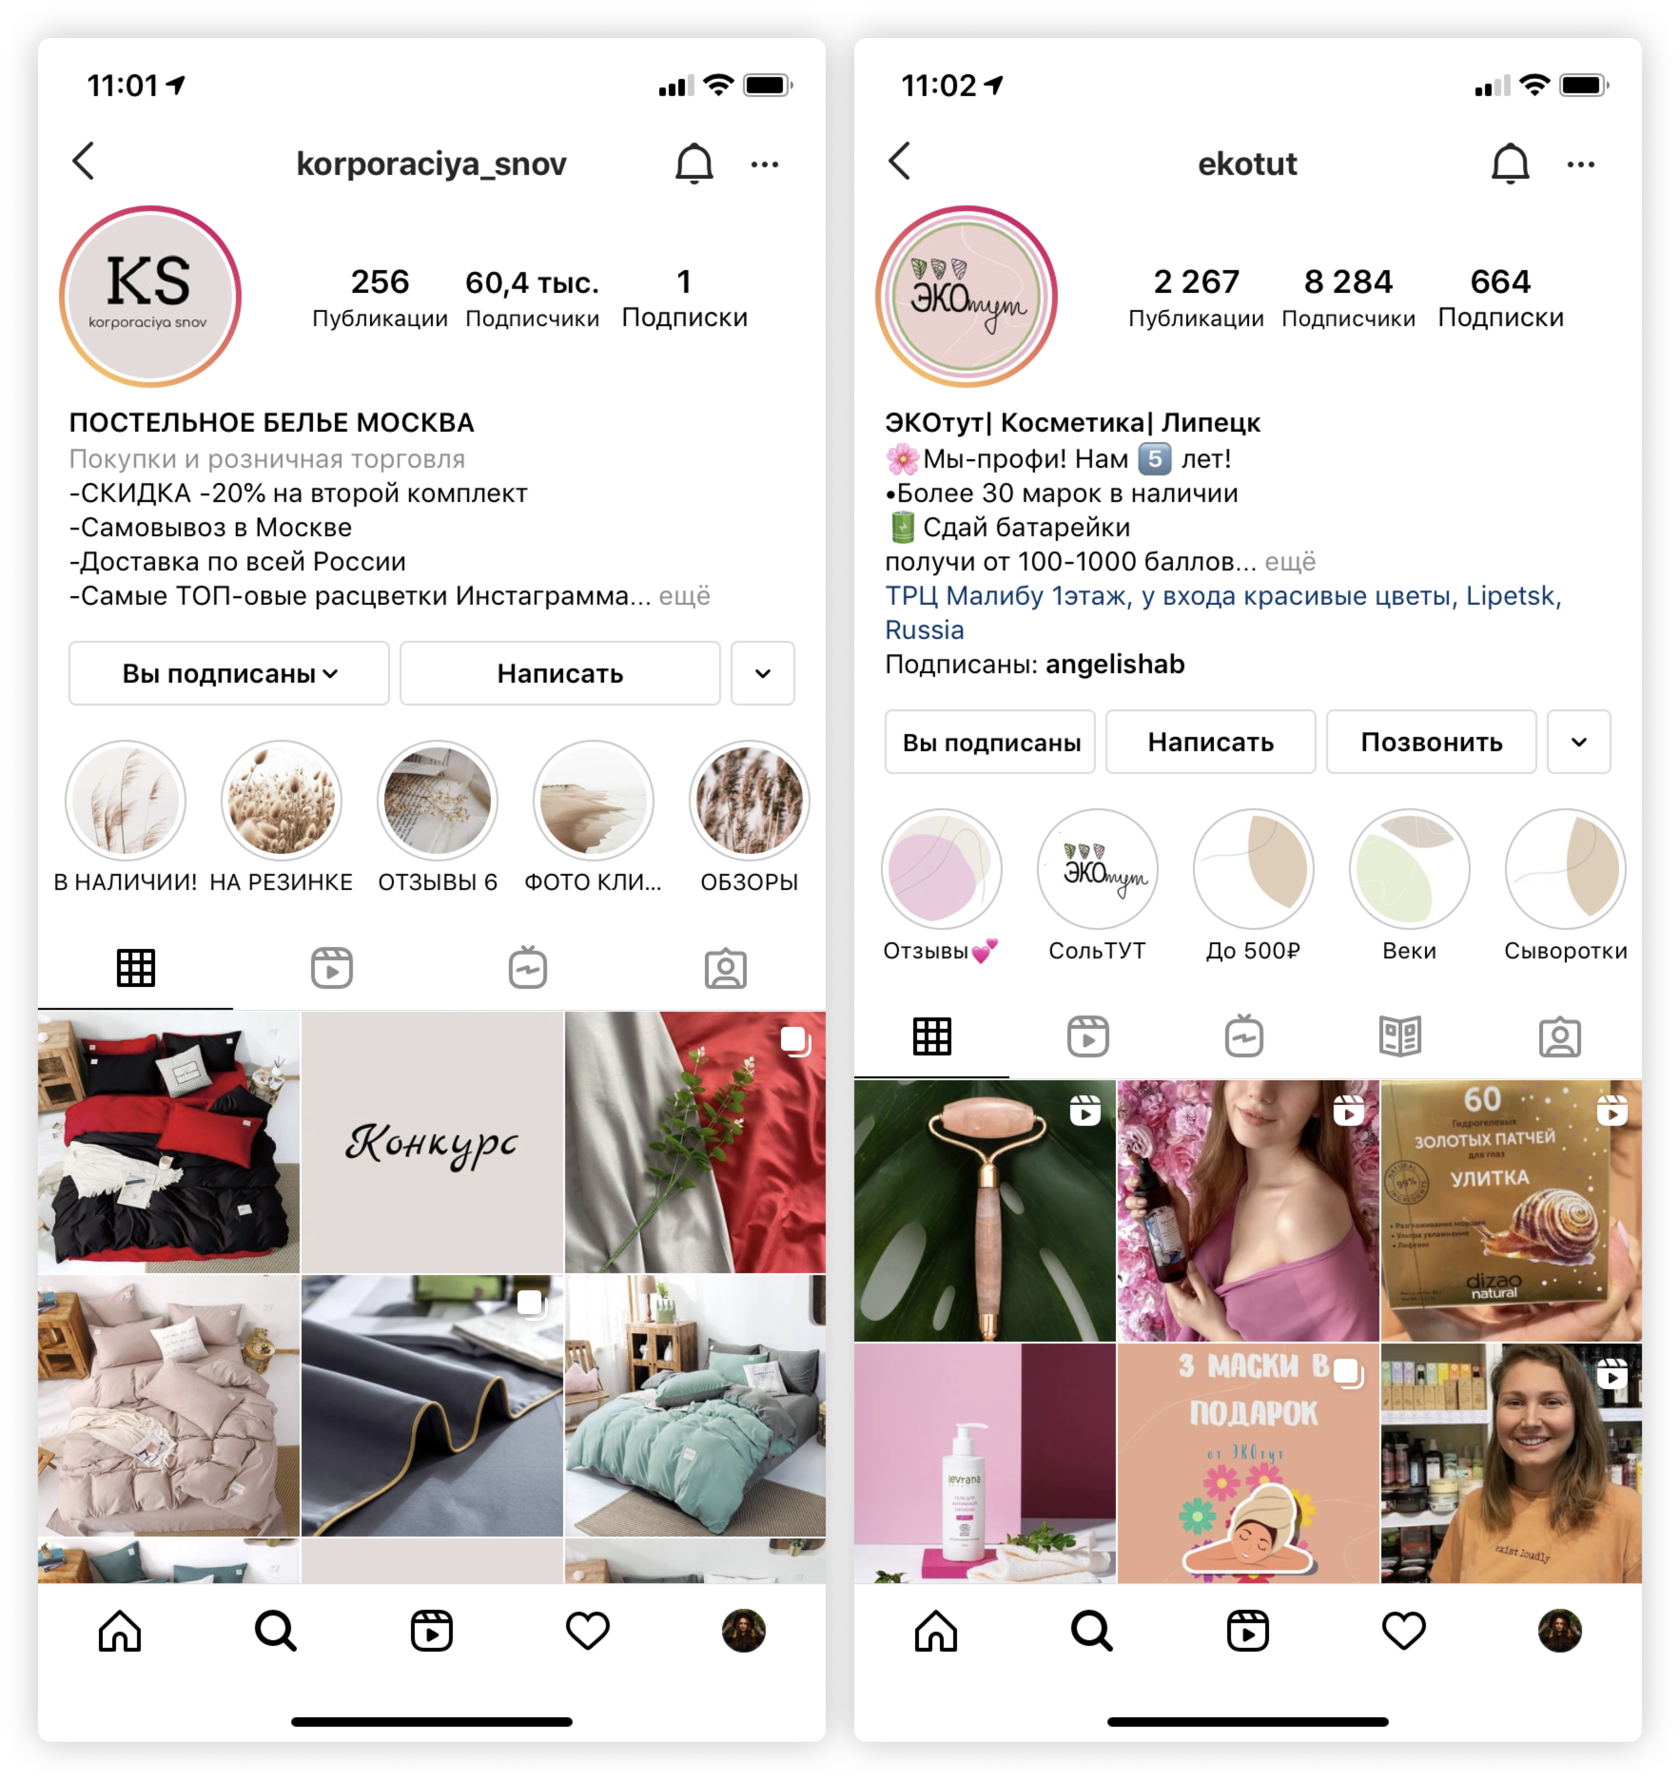 Бизнес аккаунт в Instagram: советы и рекомендации